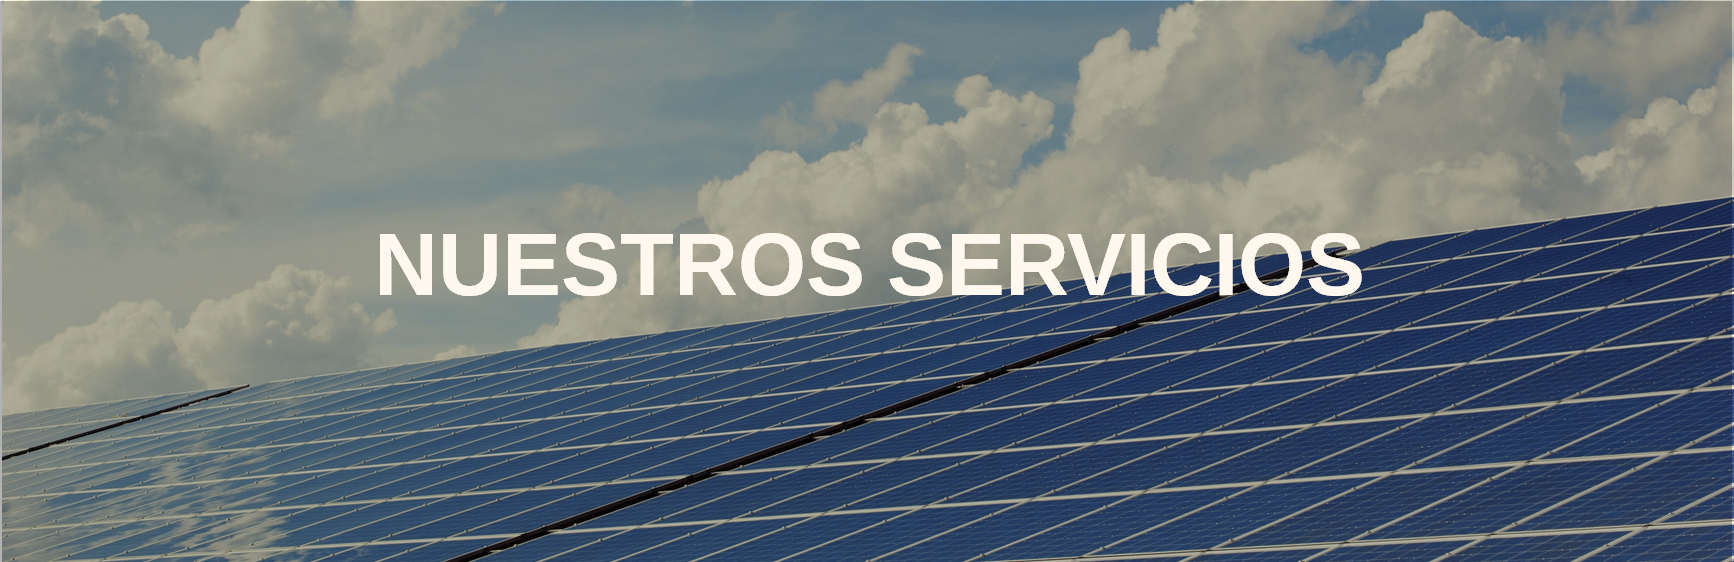 Nuestros Servicios - Energía Solar Colombia